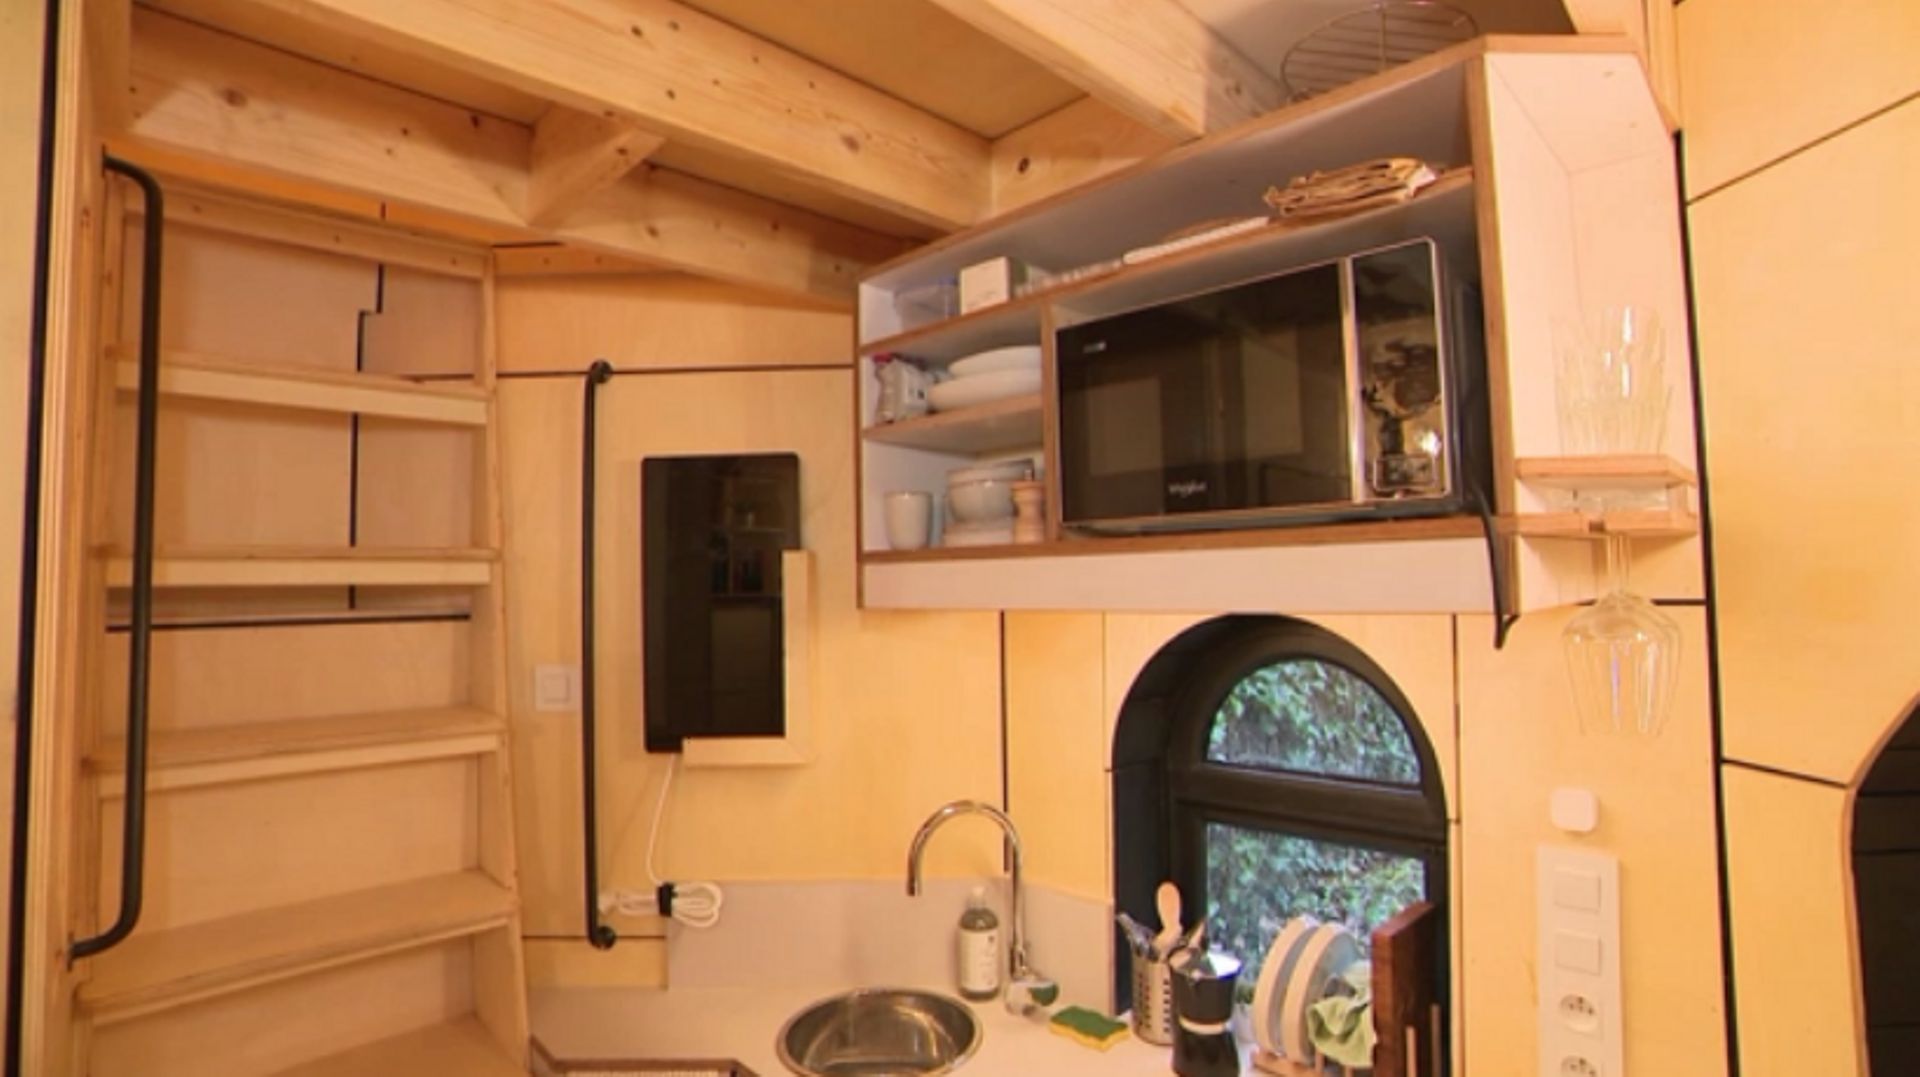 D'une superficie de 5 mètres carrés au sol, le pigeonnier est l'un des petits Airbnb du monde.